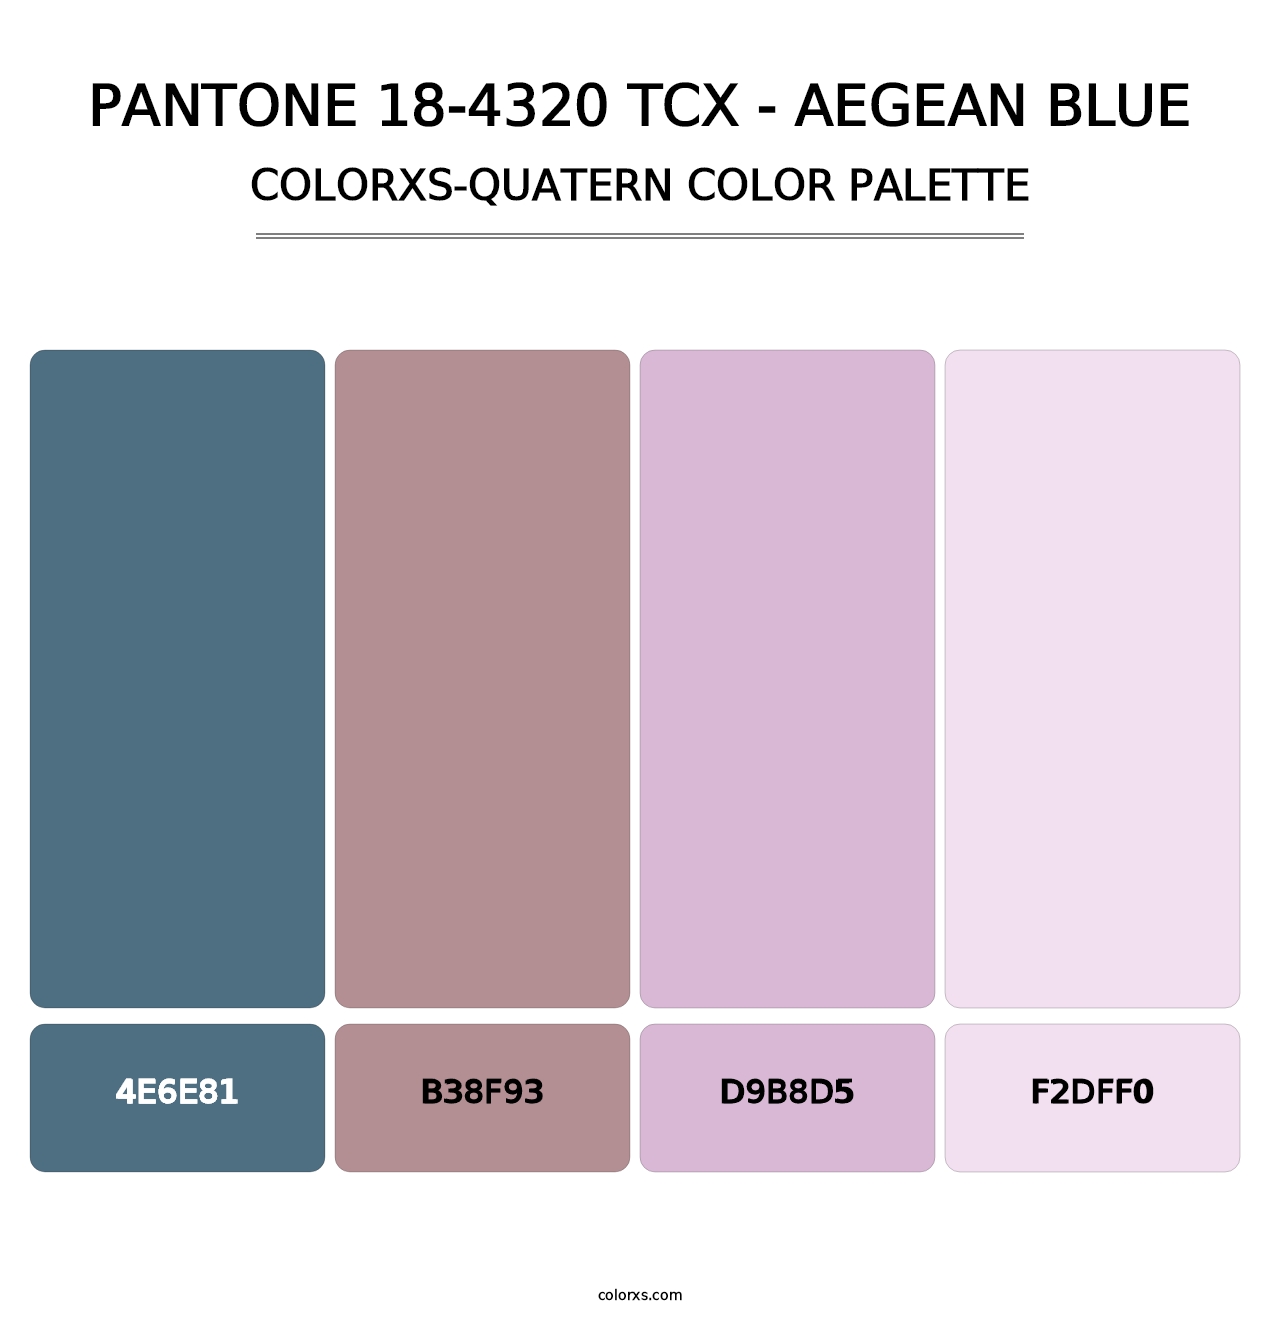 PANTONE 18-4320 TCX - Aegean Blue - Colorxs Quatern Palette